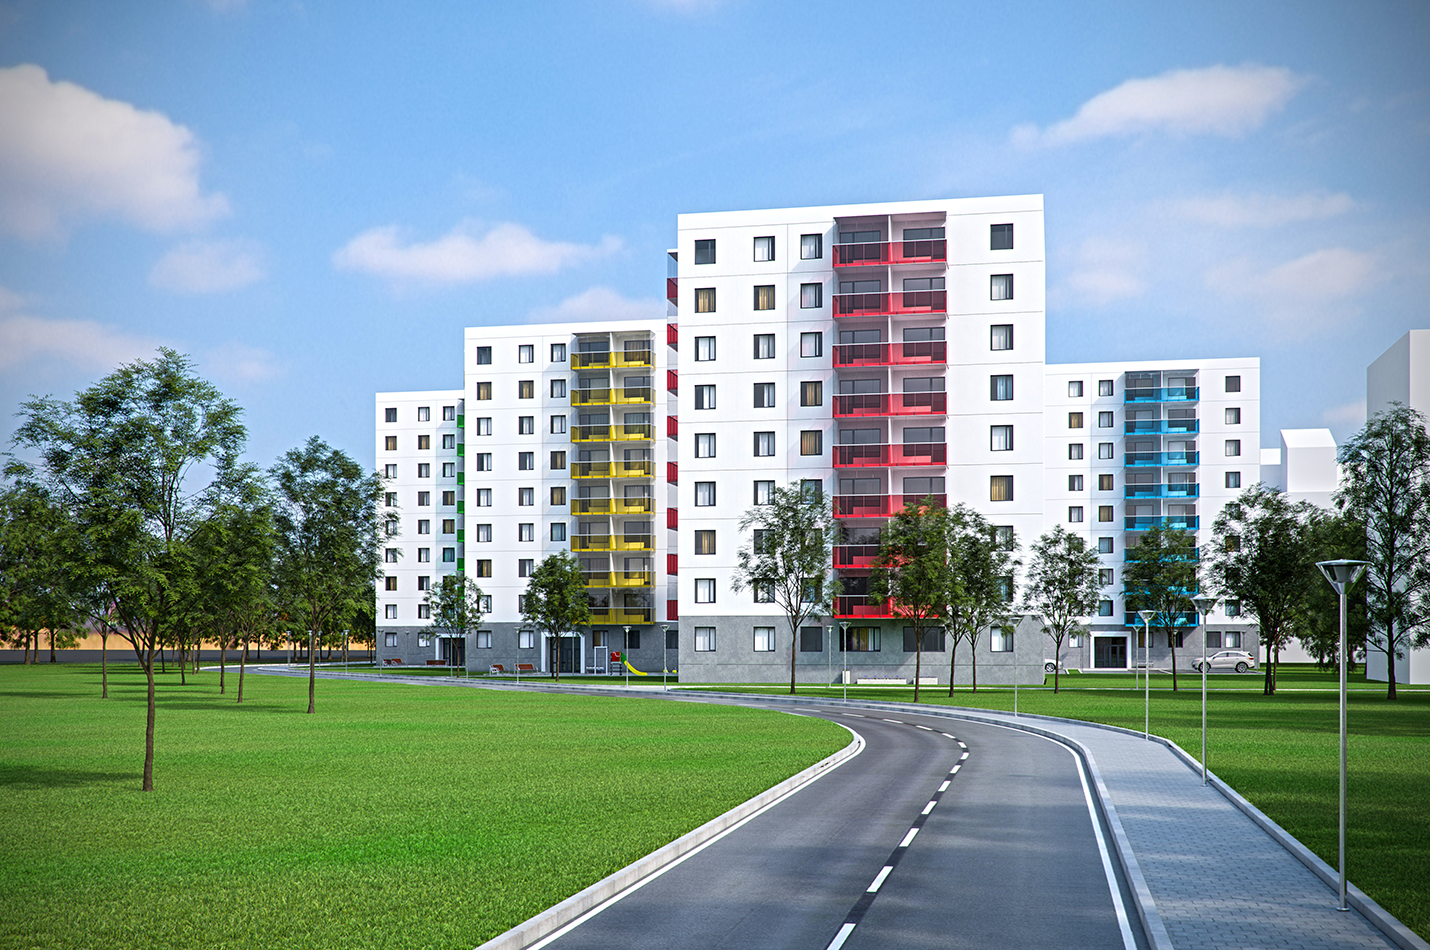 KBO attīsta vēl vienu nekustamo īpašumu projektu Imantā – četru daudzdzīvokļu māju kompleksu Akācijas - Nekustamo īpašumu ziņas - City24.lv nekustamo īpašumu sludinājumu portāls